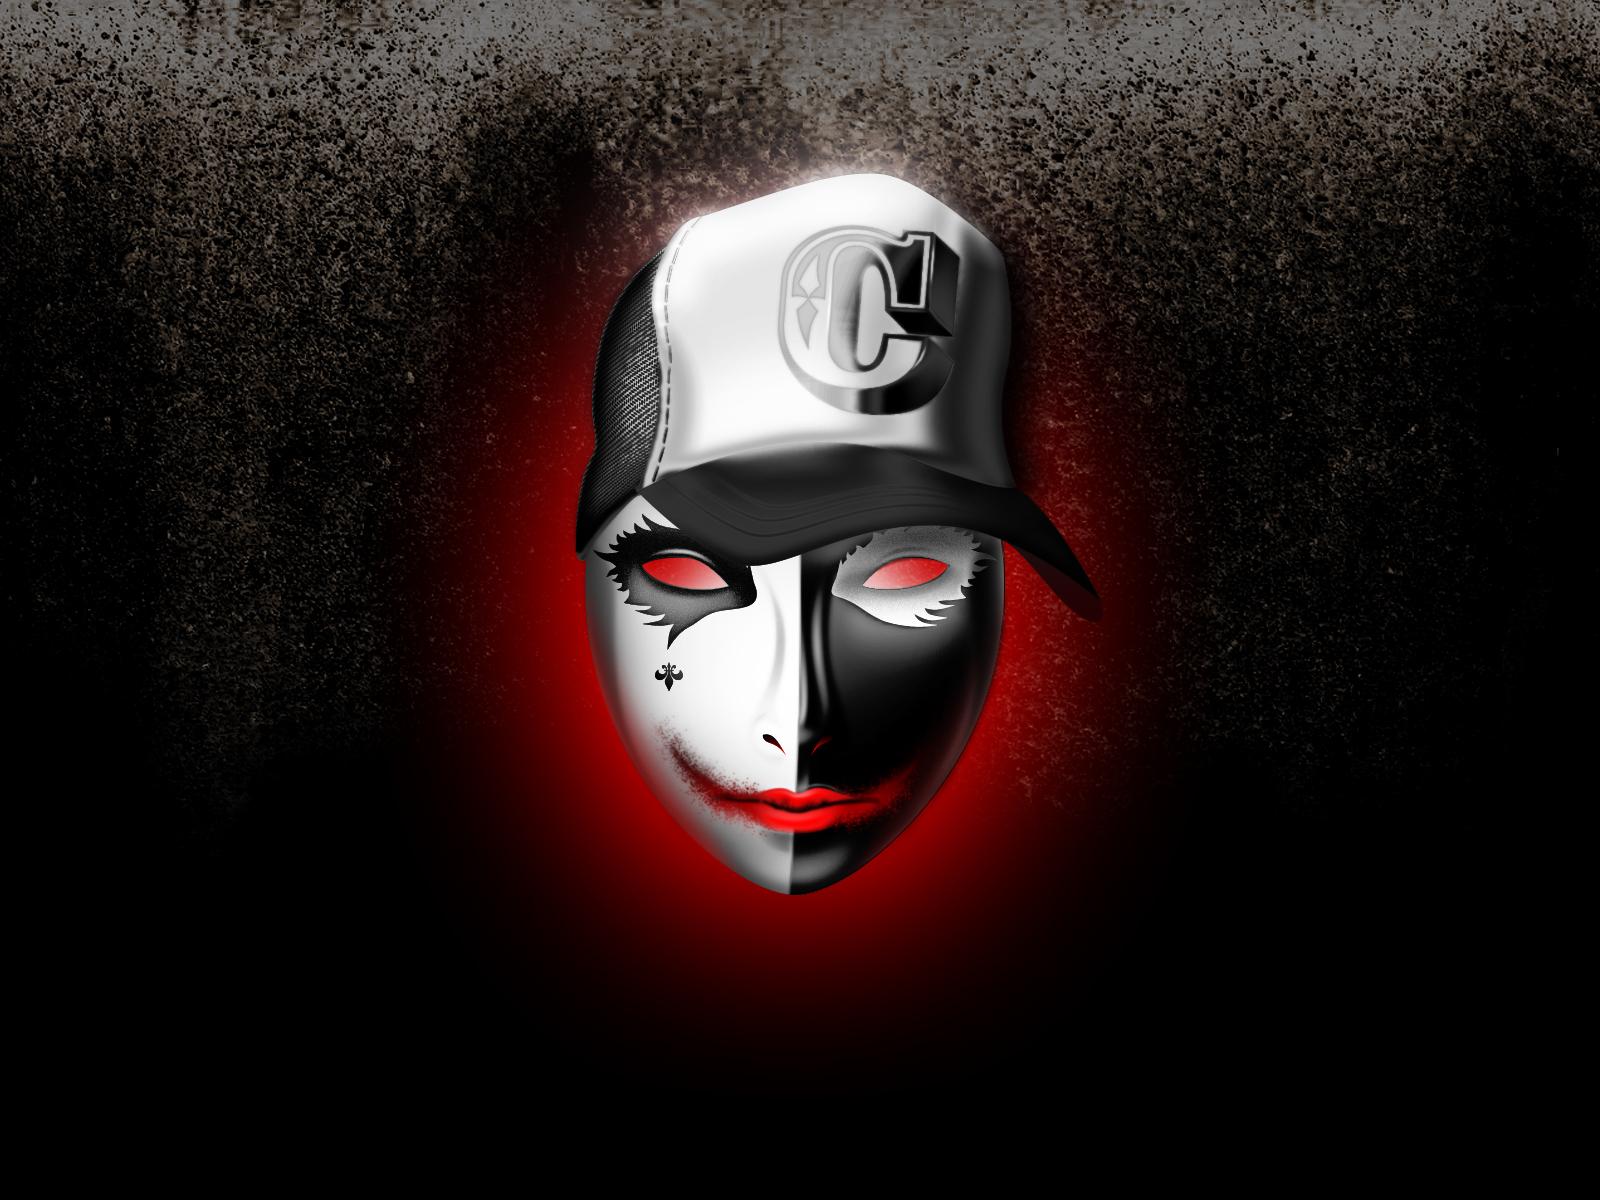 Download 35 Gambar Wallpaper Hd Joker Mask terbaru 2020 - Miuiku